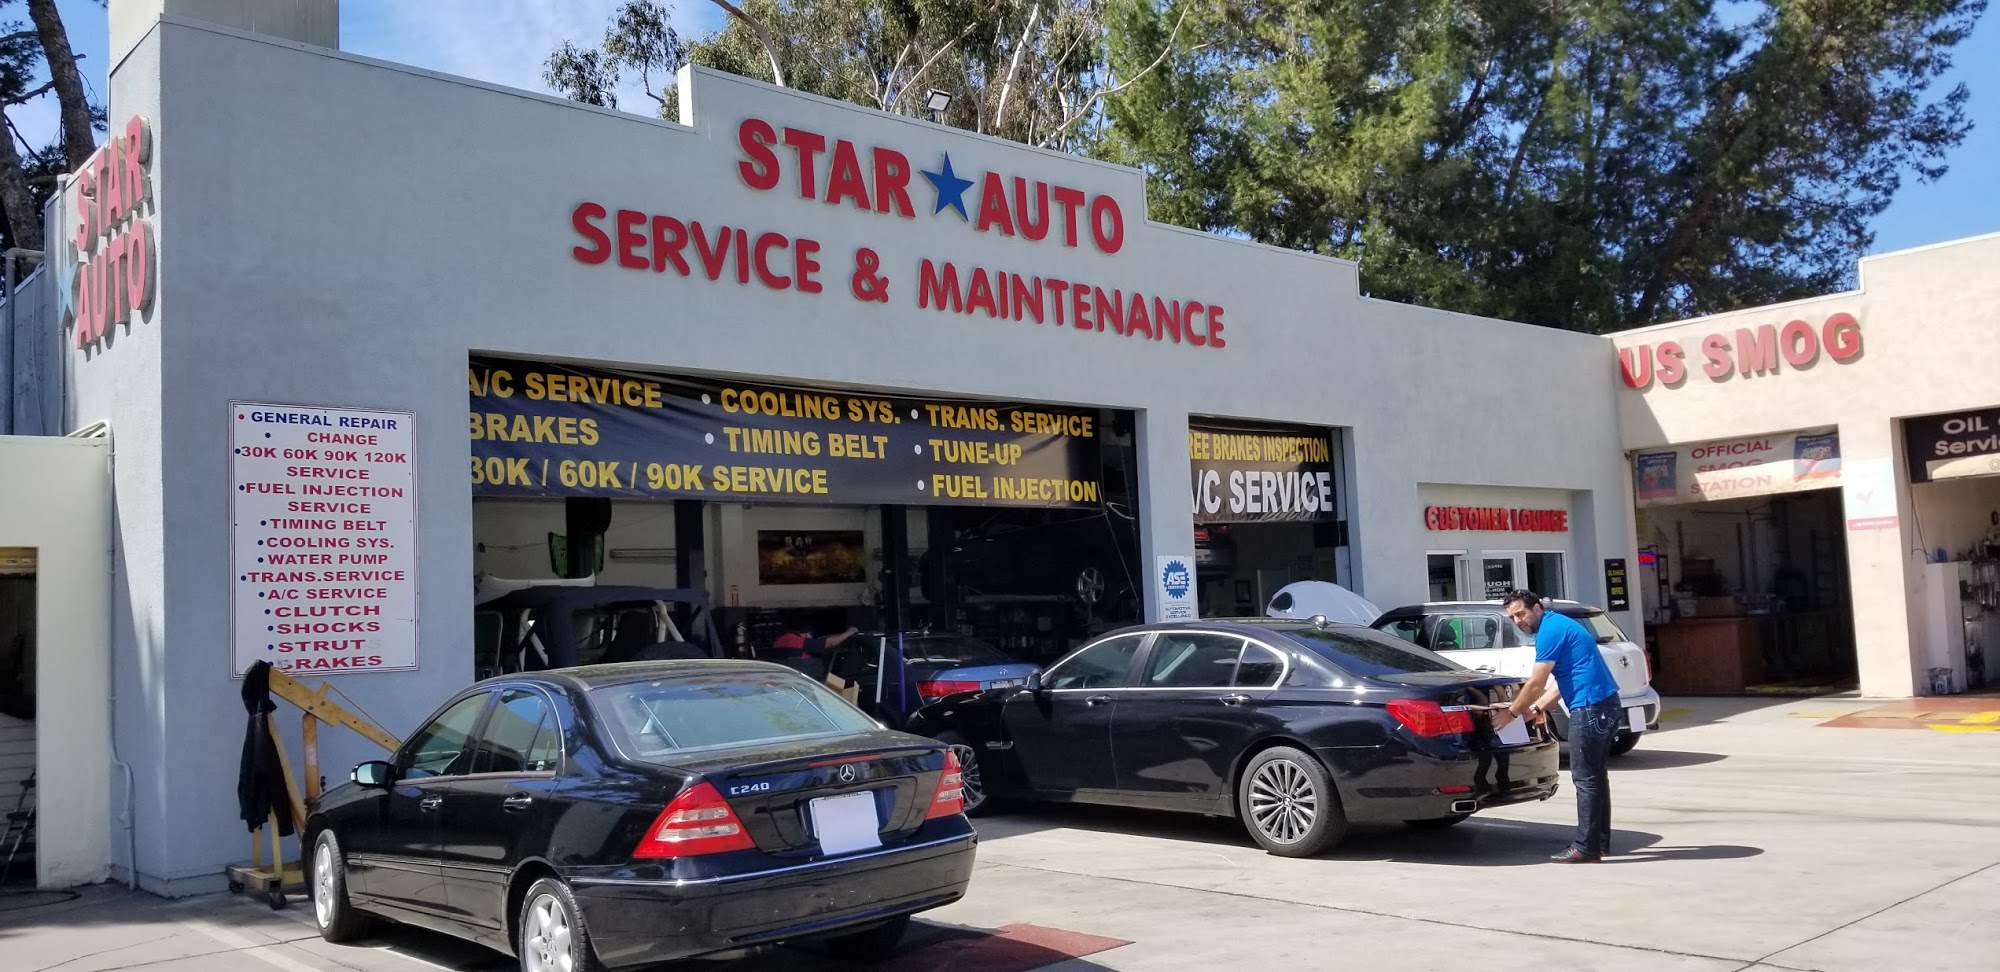 Star Auto Services